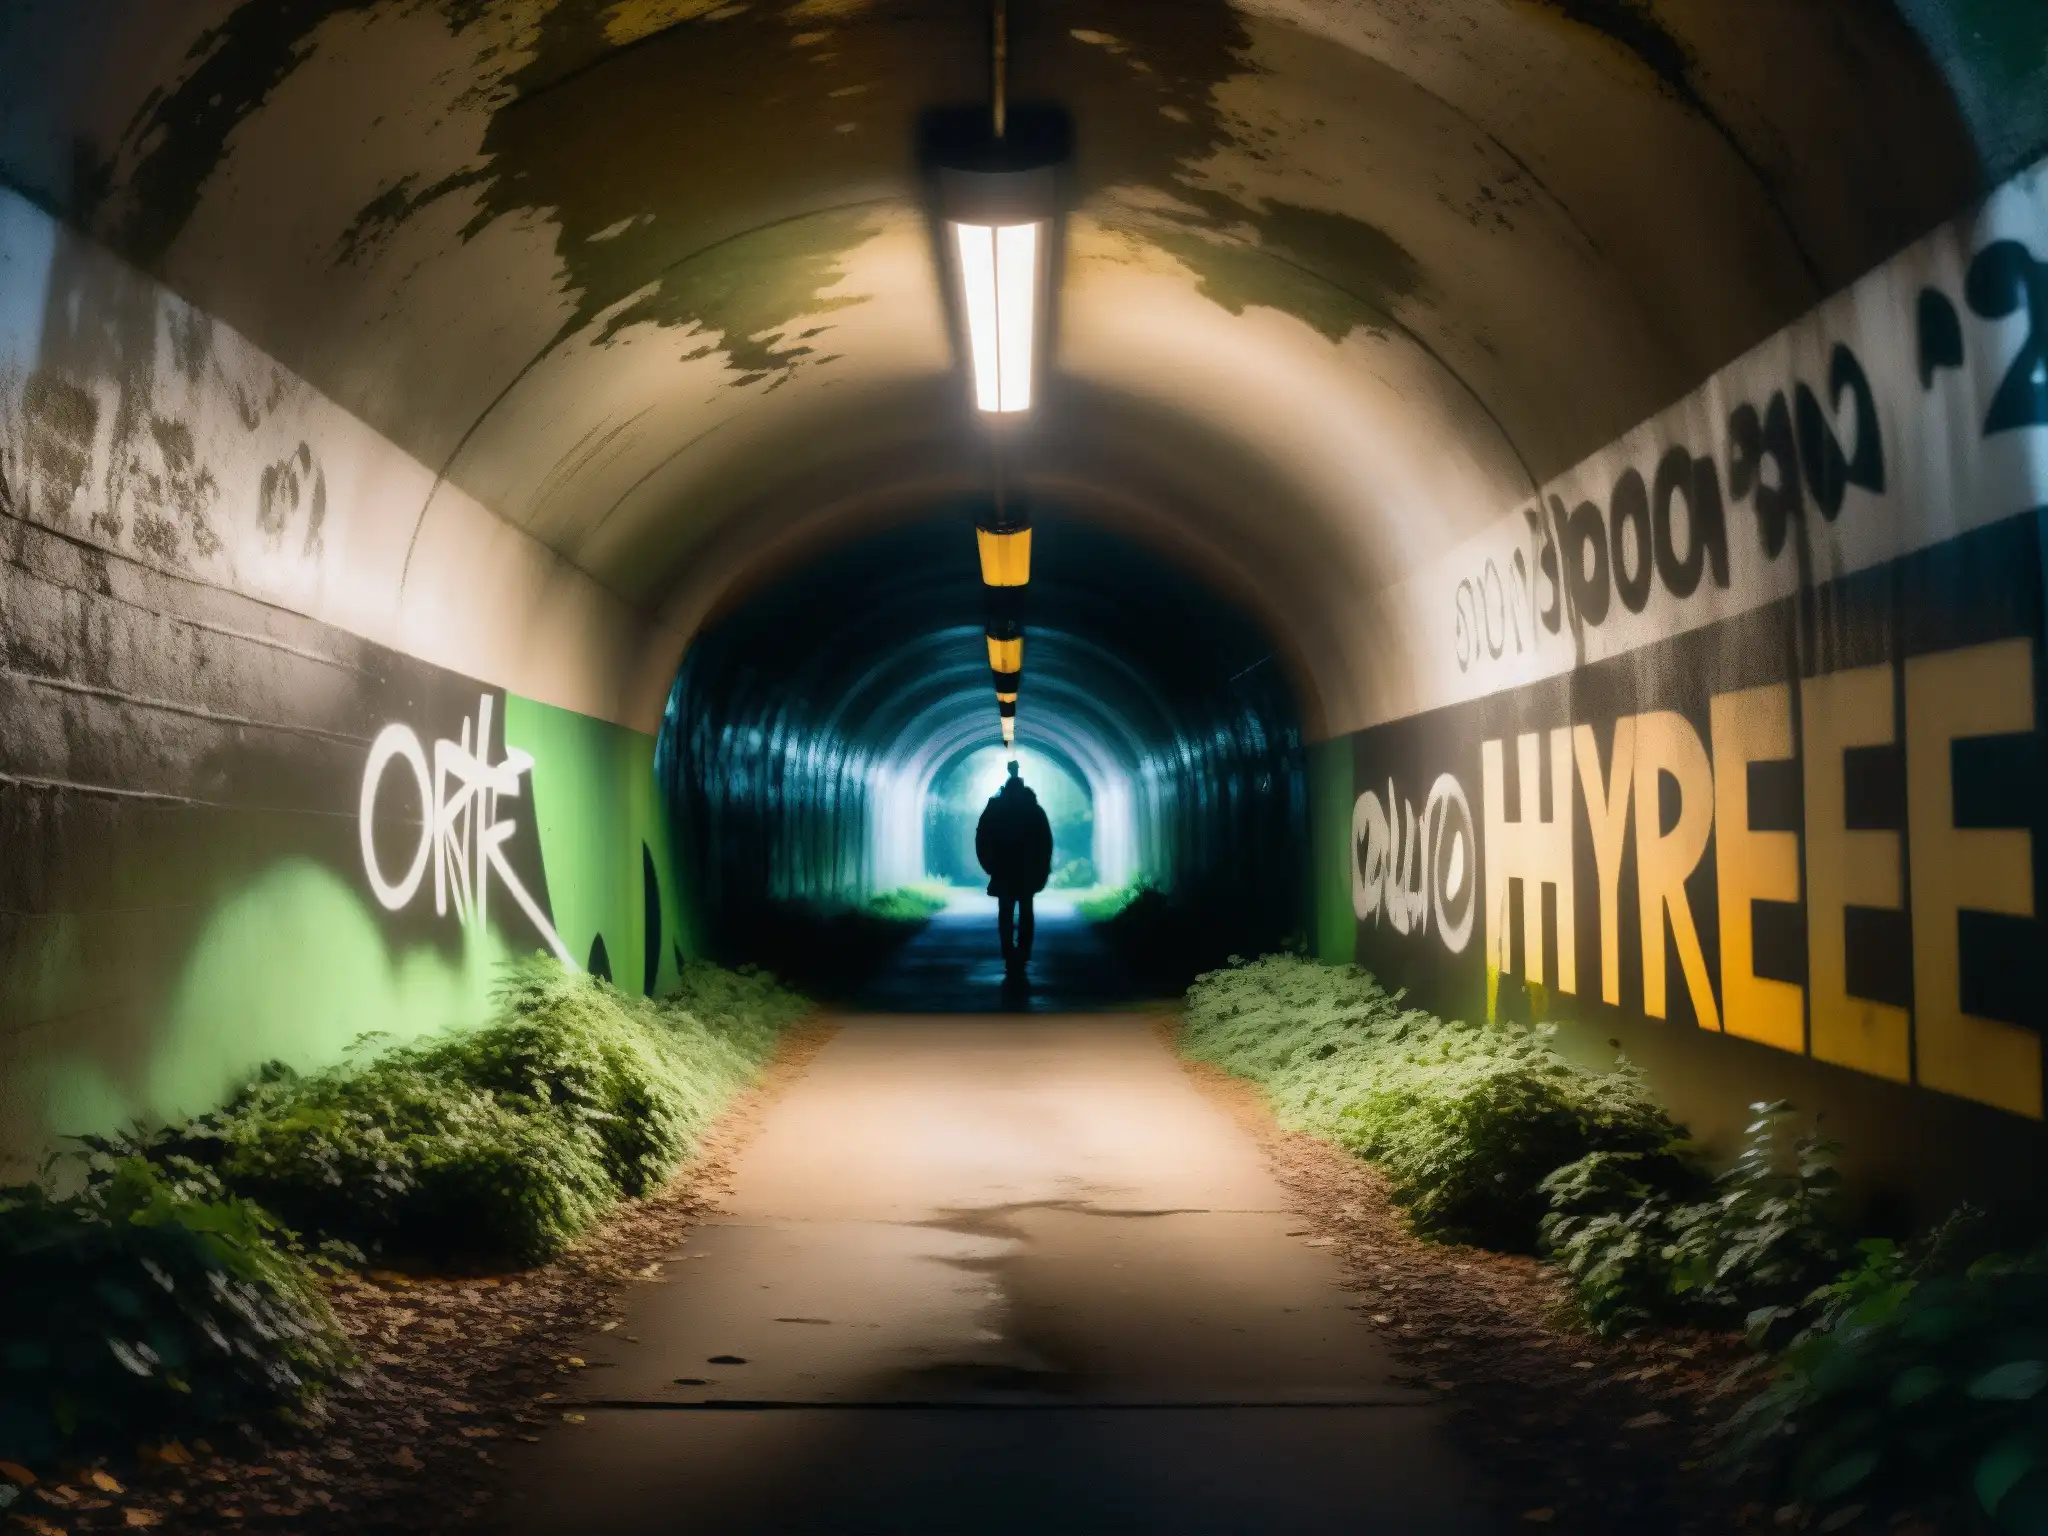 Entrada sombría de túnel con graffiti y sombras inquietantes, sugiriendo misterio y la leyenda urbana túnel Screaming Tunnel